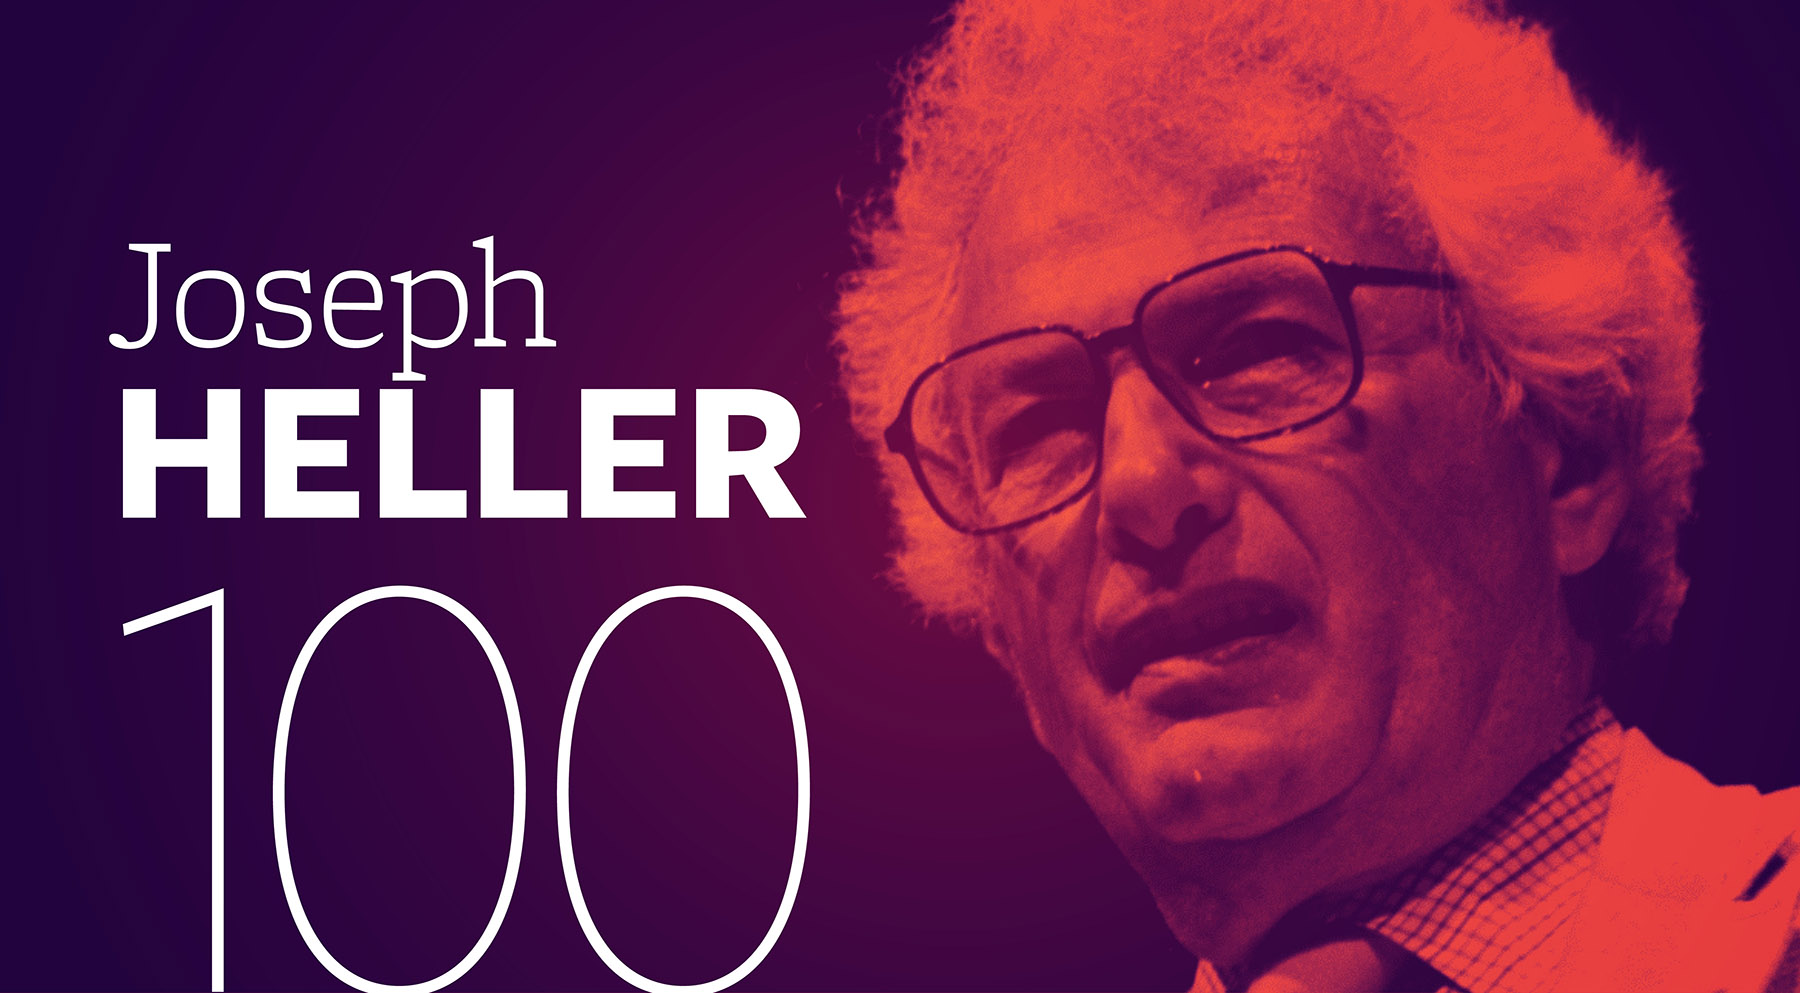 Good as Heller (Joseph Heller 100)